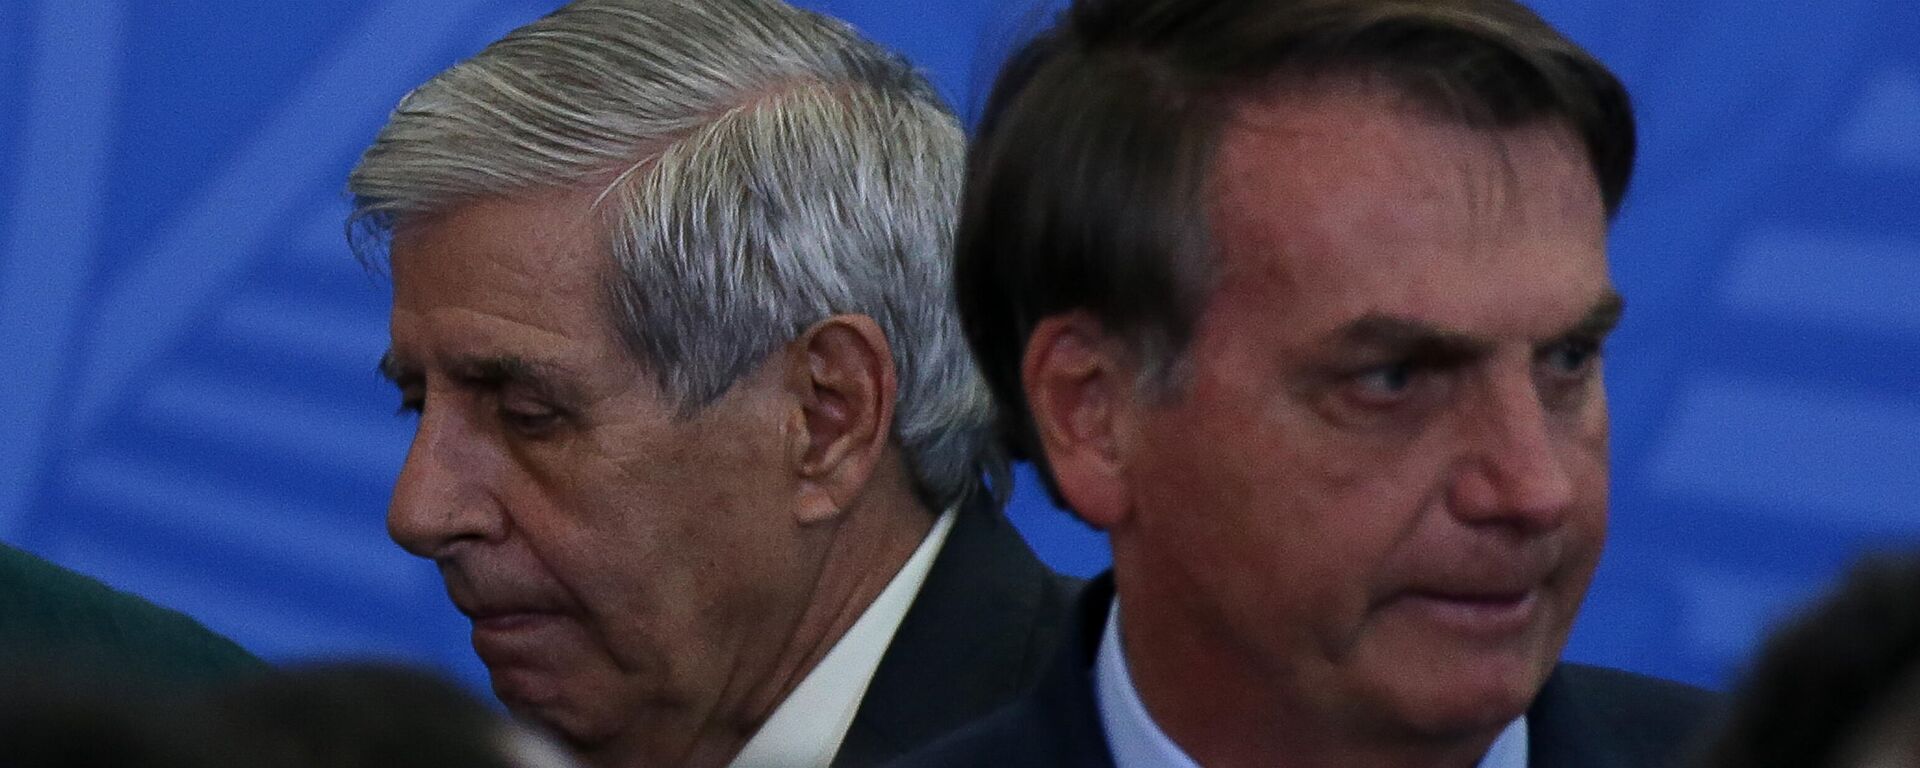 O ministro do GSI (Gabinete de Segurança Institucional), Augusto Heleno, e o presidente Jair Bolsonaro durante cerimônia no Palácio do Planalto, em Brasília (DF), em 20 de fevereiro de 2020 - Sputnik Brasil, 1920, 18.02.2022